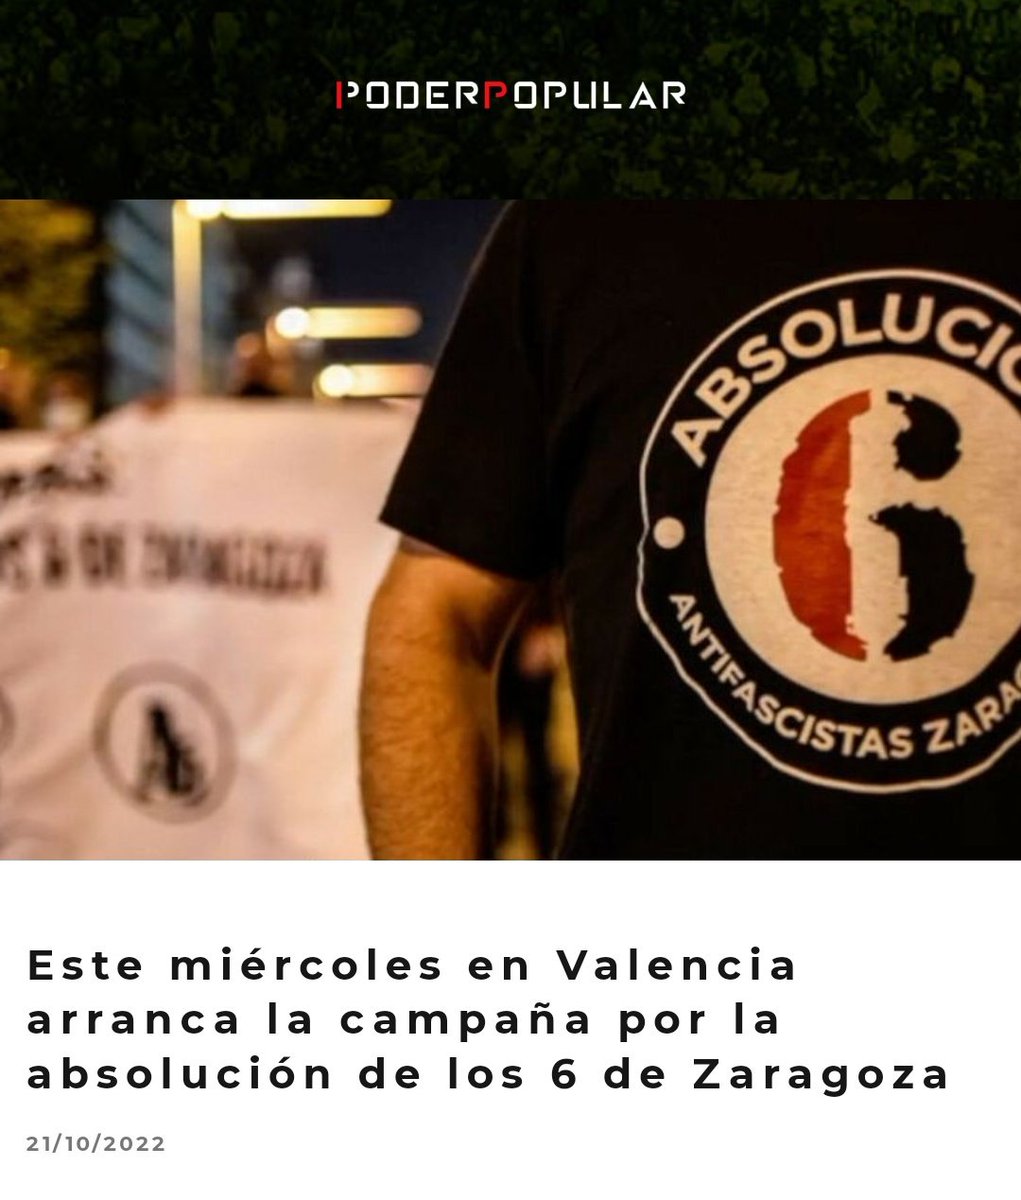 #Actualidad 📰 📌El próximo miércoles 26 arranca en Valencia la campaña por la absolución de los 6 de Zaragoza. Con la participación de @javitxuaijon, uno de los 6 jóvenes encausados, y @Nega_Maiz, de @chikosdelmaiz. ✍🏼Noticia: poderpopular.info/2022/10/21/est… #Absolución6DeZaragoza